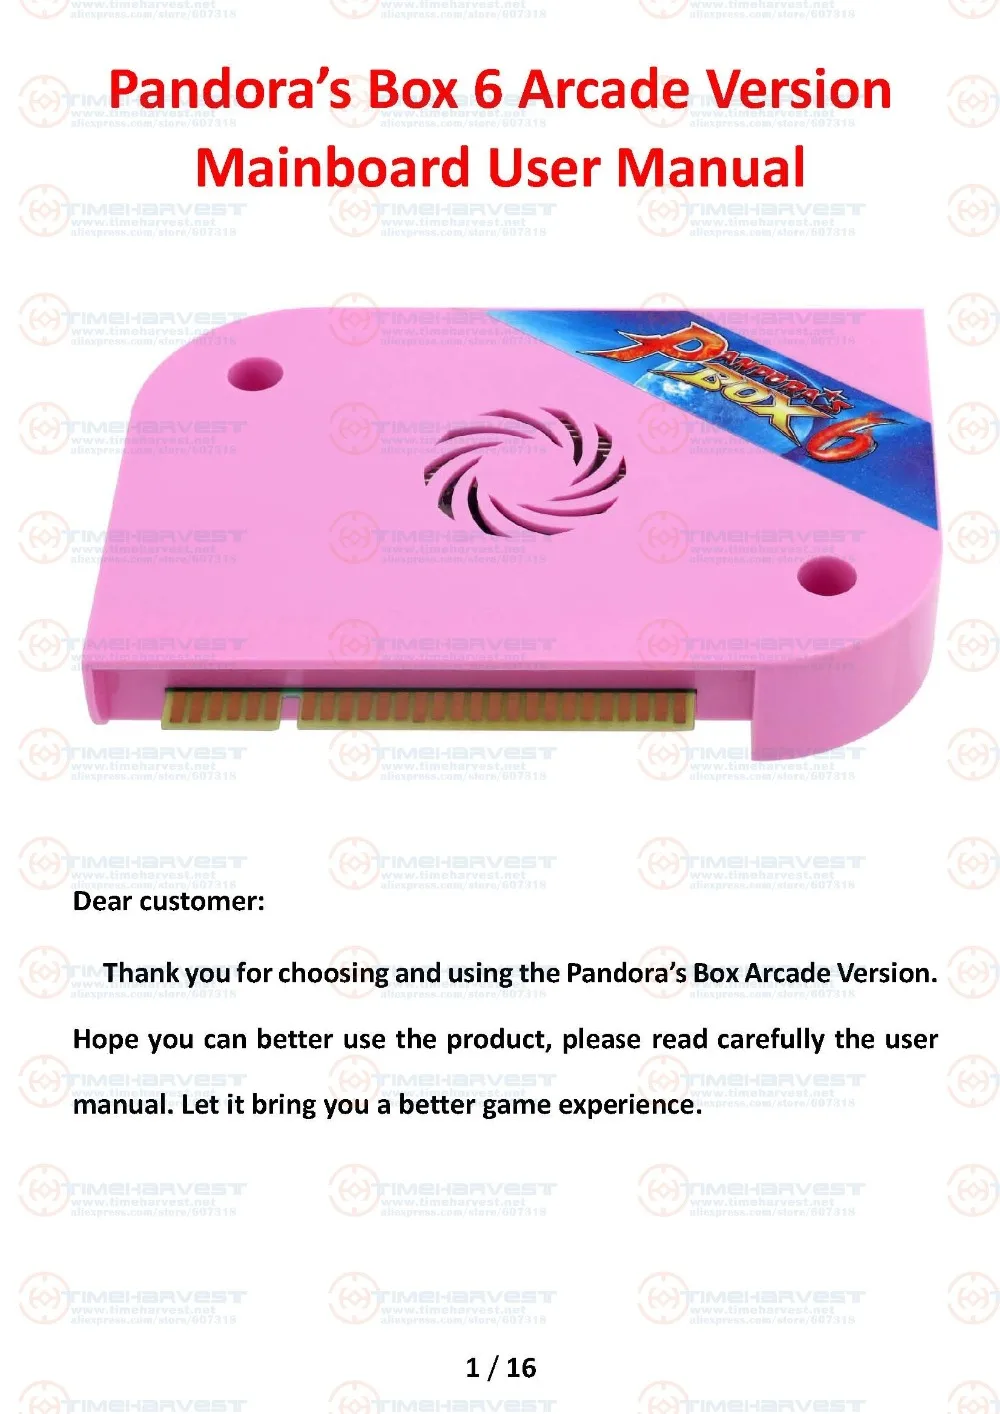 Новое поступление оригинальная коробка Pandora 6 JAMMA версия 1300 в 1 игры доска семейная версия для игры джойстик аркадный шкаф Marchine